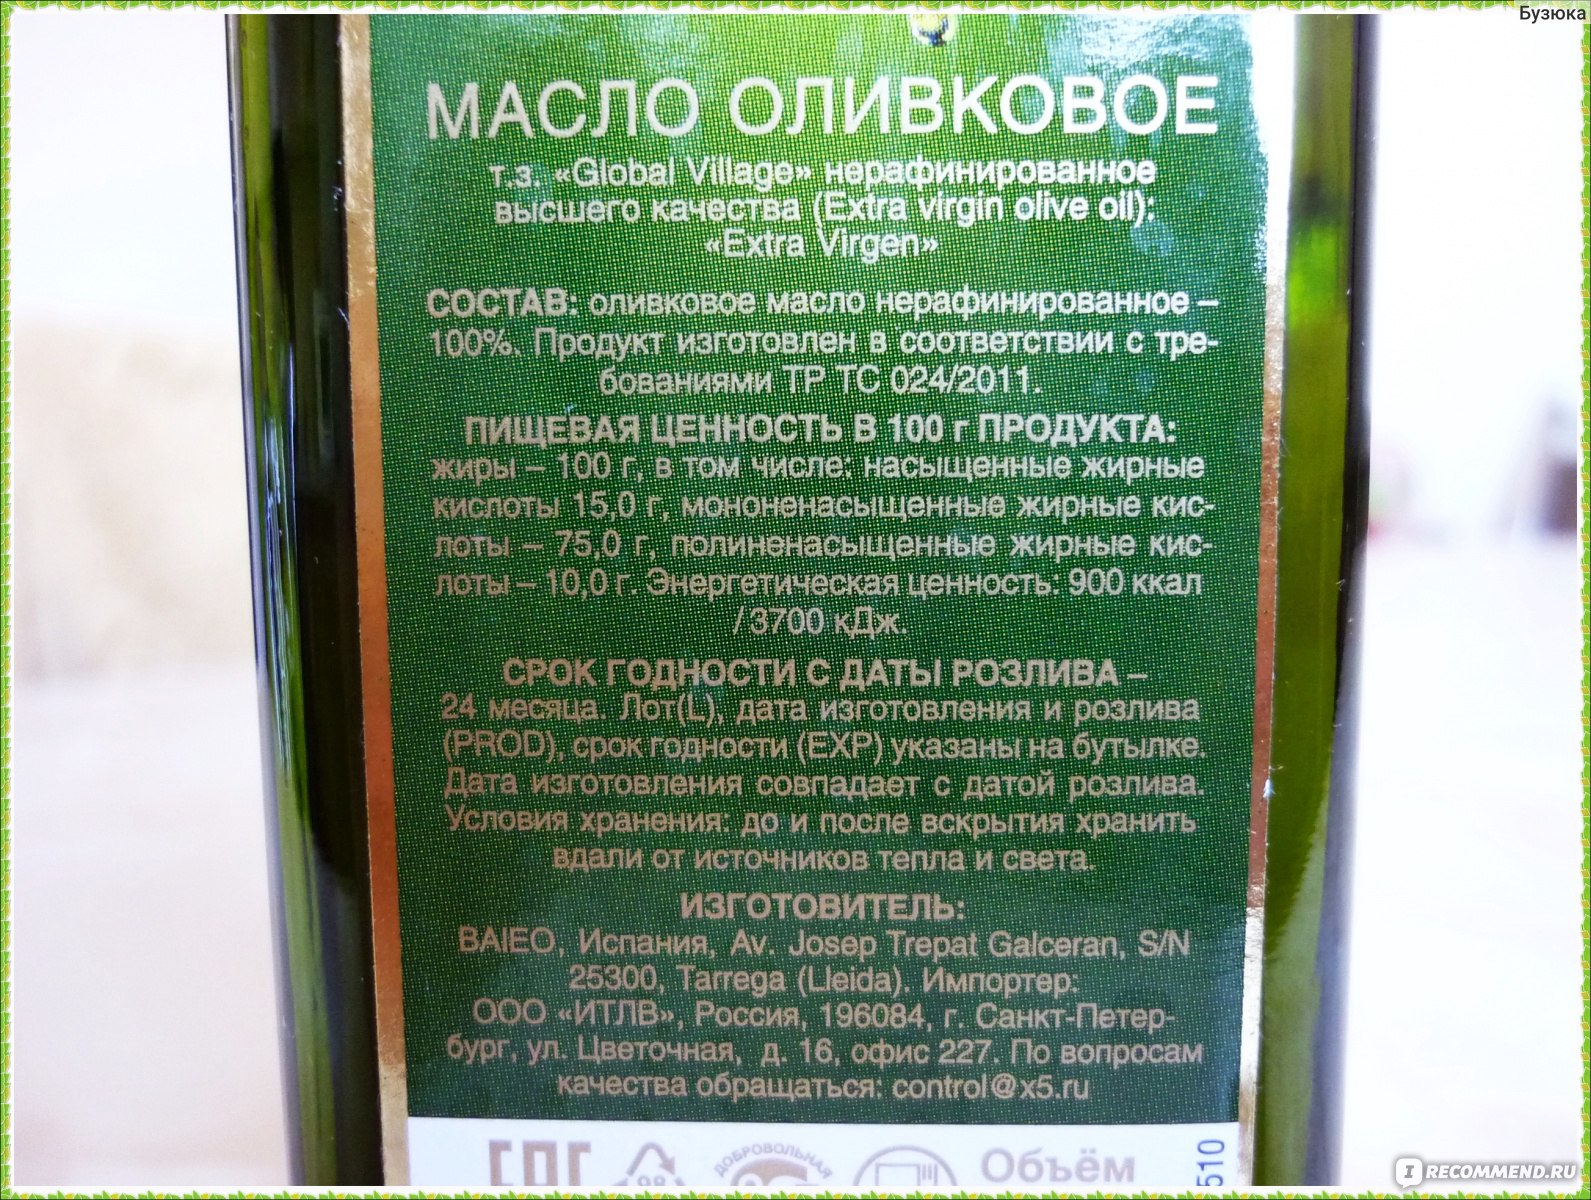 Как выбрать оливковое масло в магазине. Маркировка оливкового масла. Условия хранения оливкового масла. Срок хранения оливкового масла. Как выбрать оливковое масло правильно.